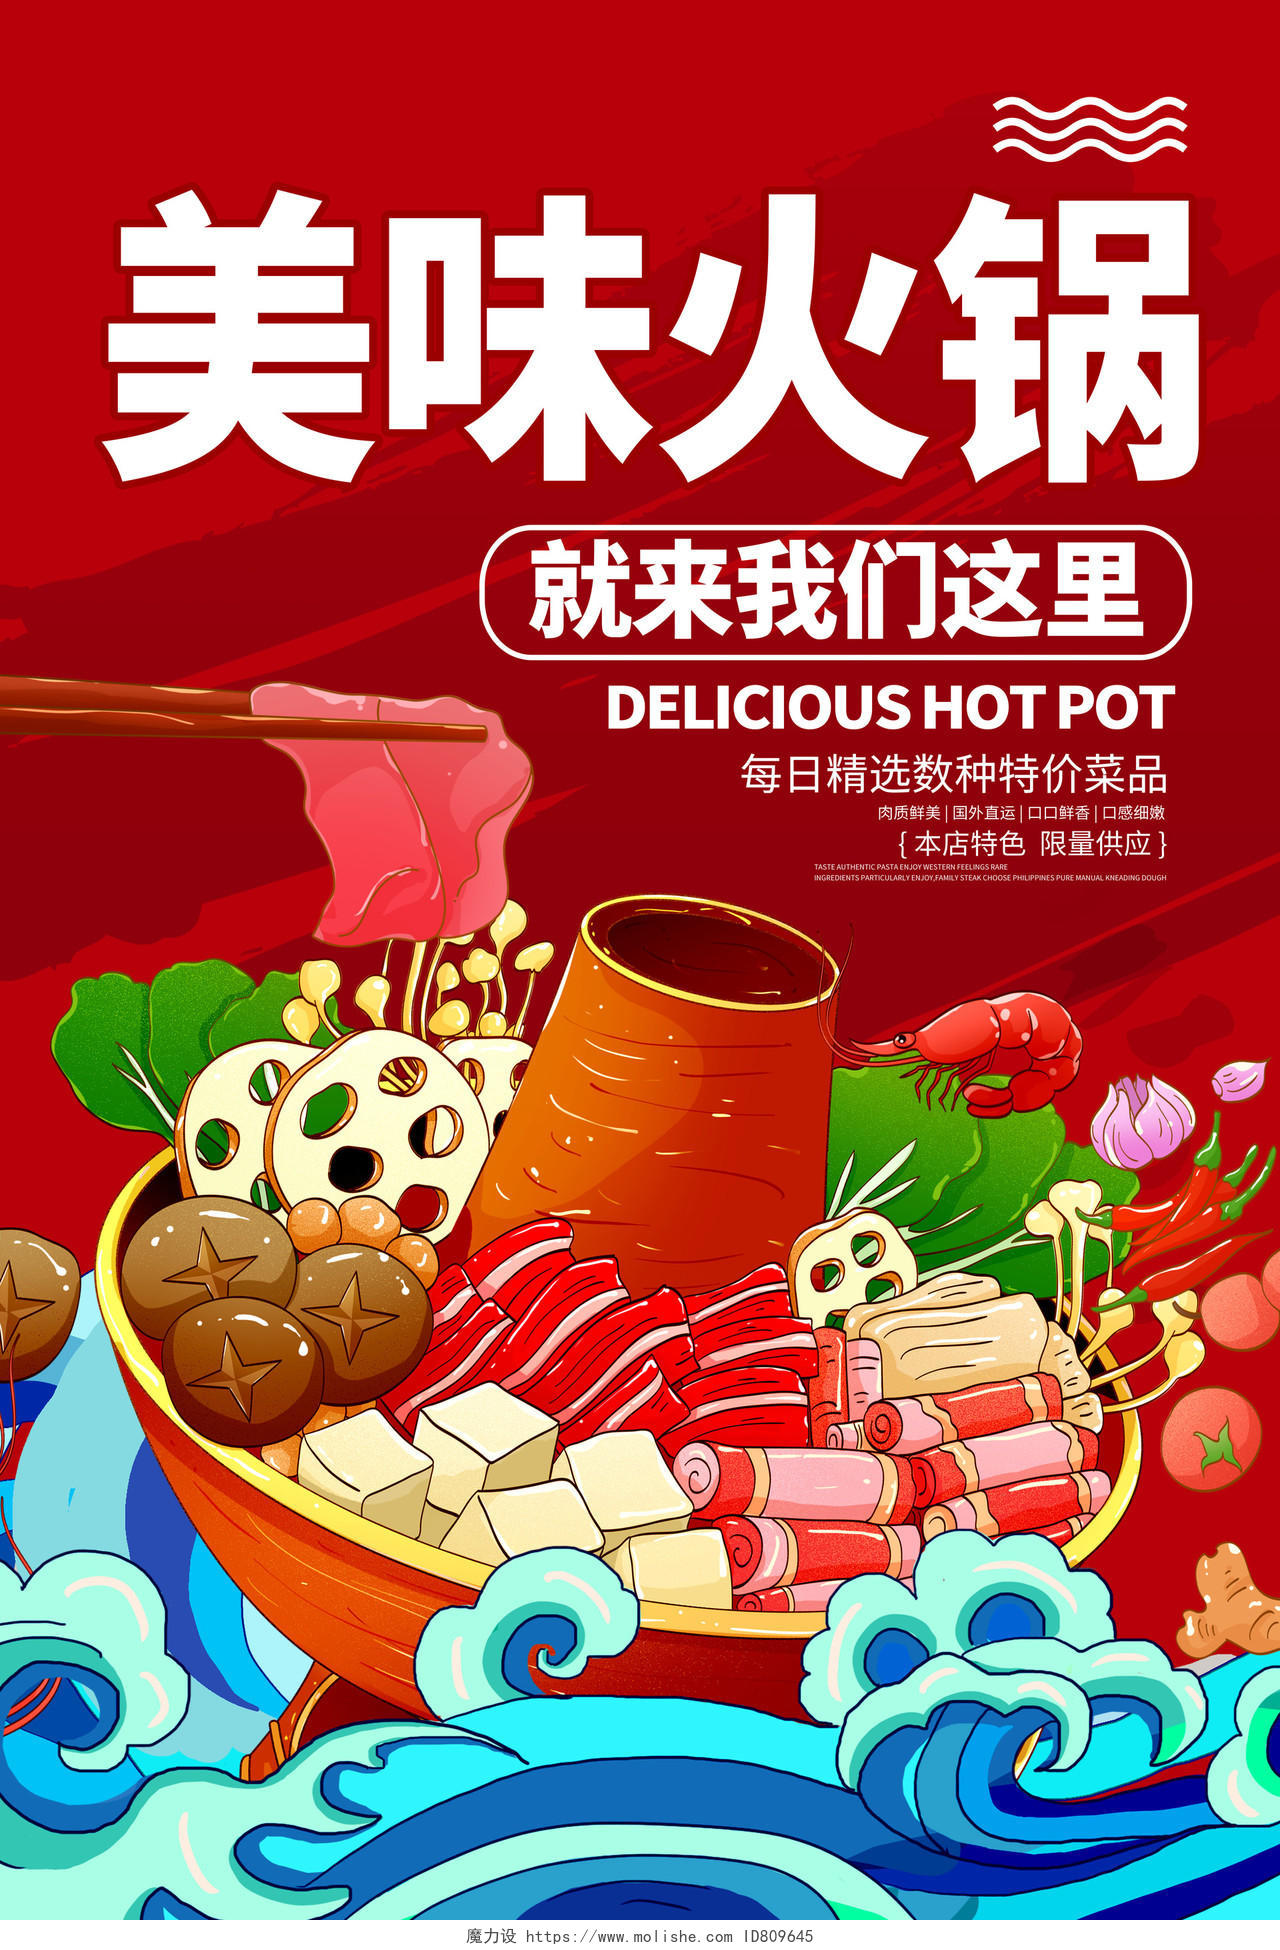 红色国潮美味火锅火锅促销宣传海报设计